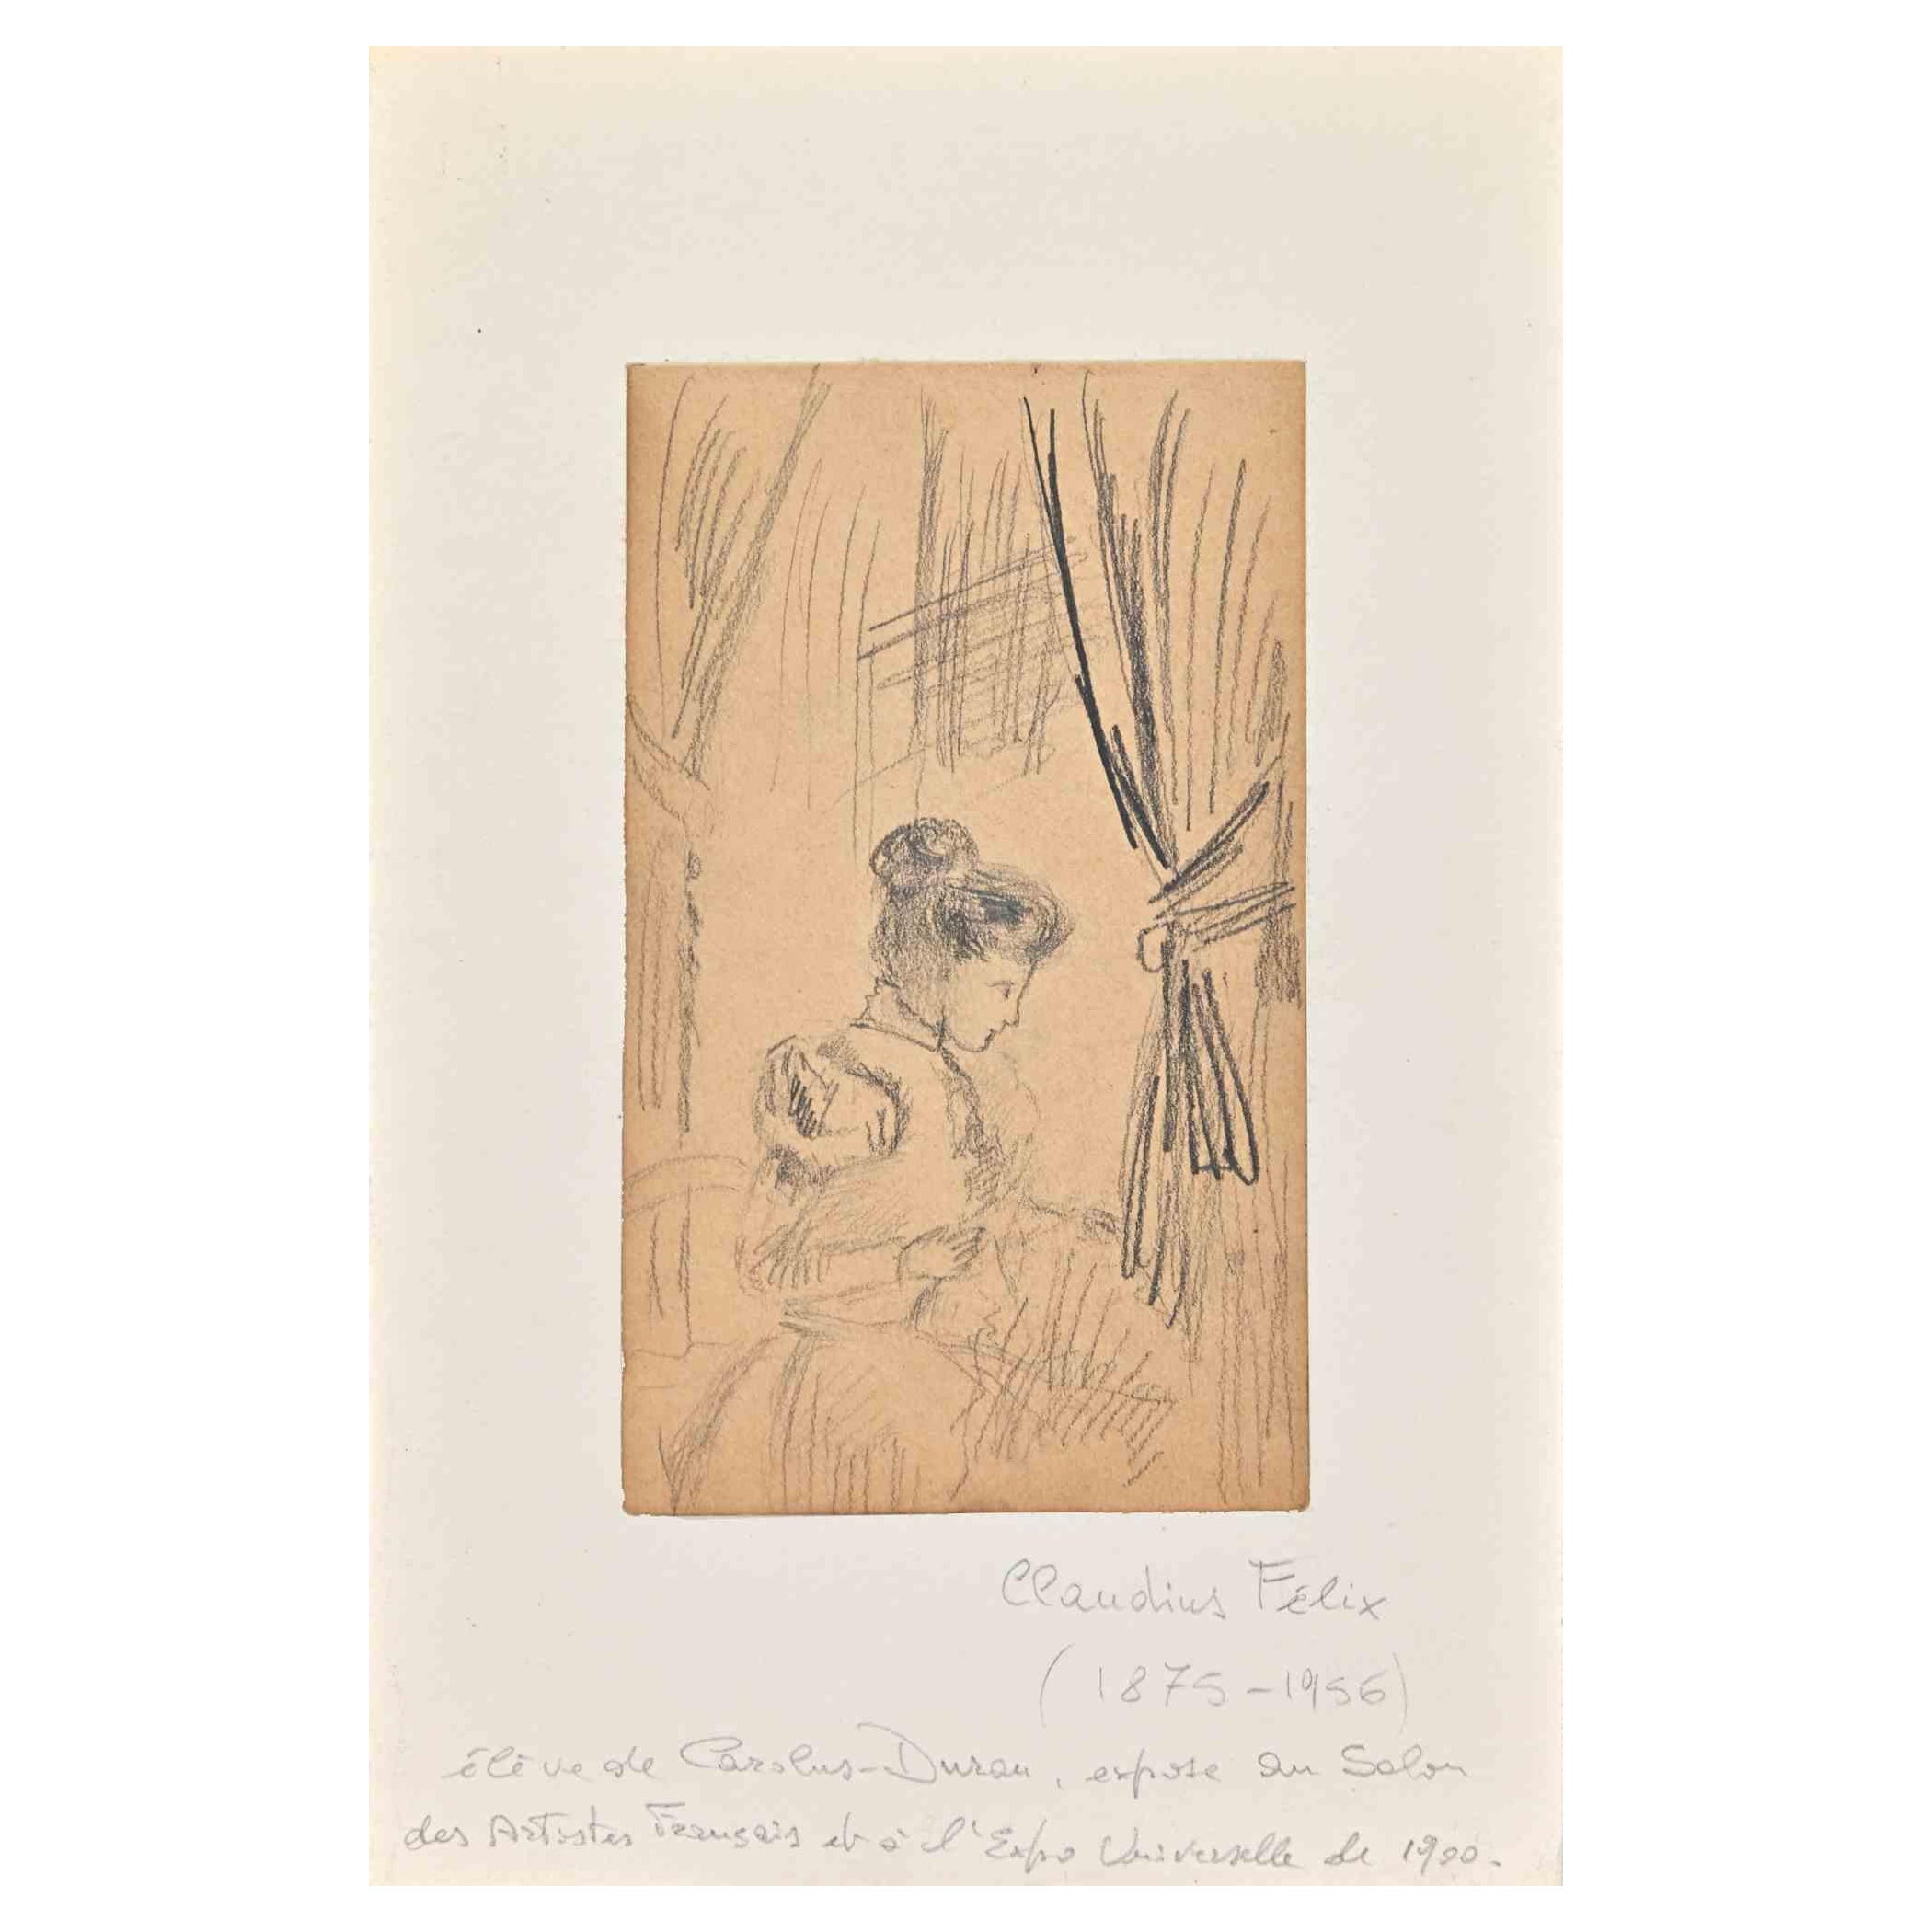 Frau in einem Interieur ist eine Bleistiftzeichnung von Claudin Felix aus dem Jahr 1890.

Guter Zustand auf braunem Papier mit weißem Karton-Passpartout (25x16 cm).

Keine Unterschrift.